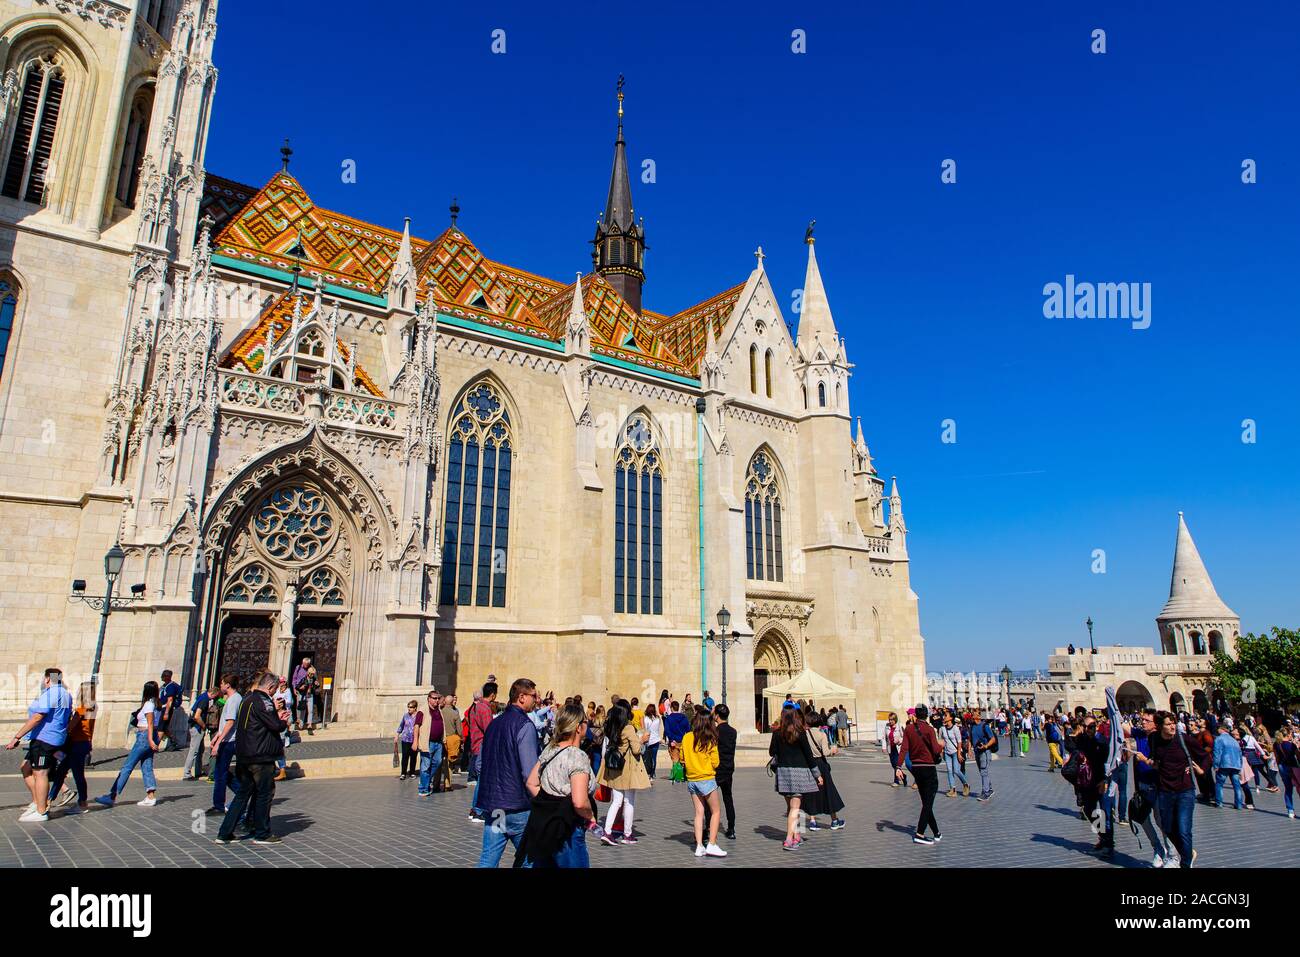 L'église Matthias, une église catholique situé dans la Sainte Trinité Square, du quartier du château de Buda, à Budapest, Hongrie Banque D'Images